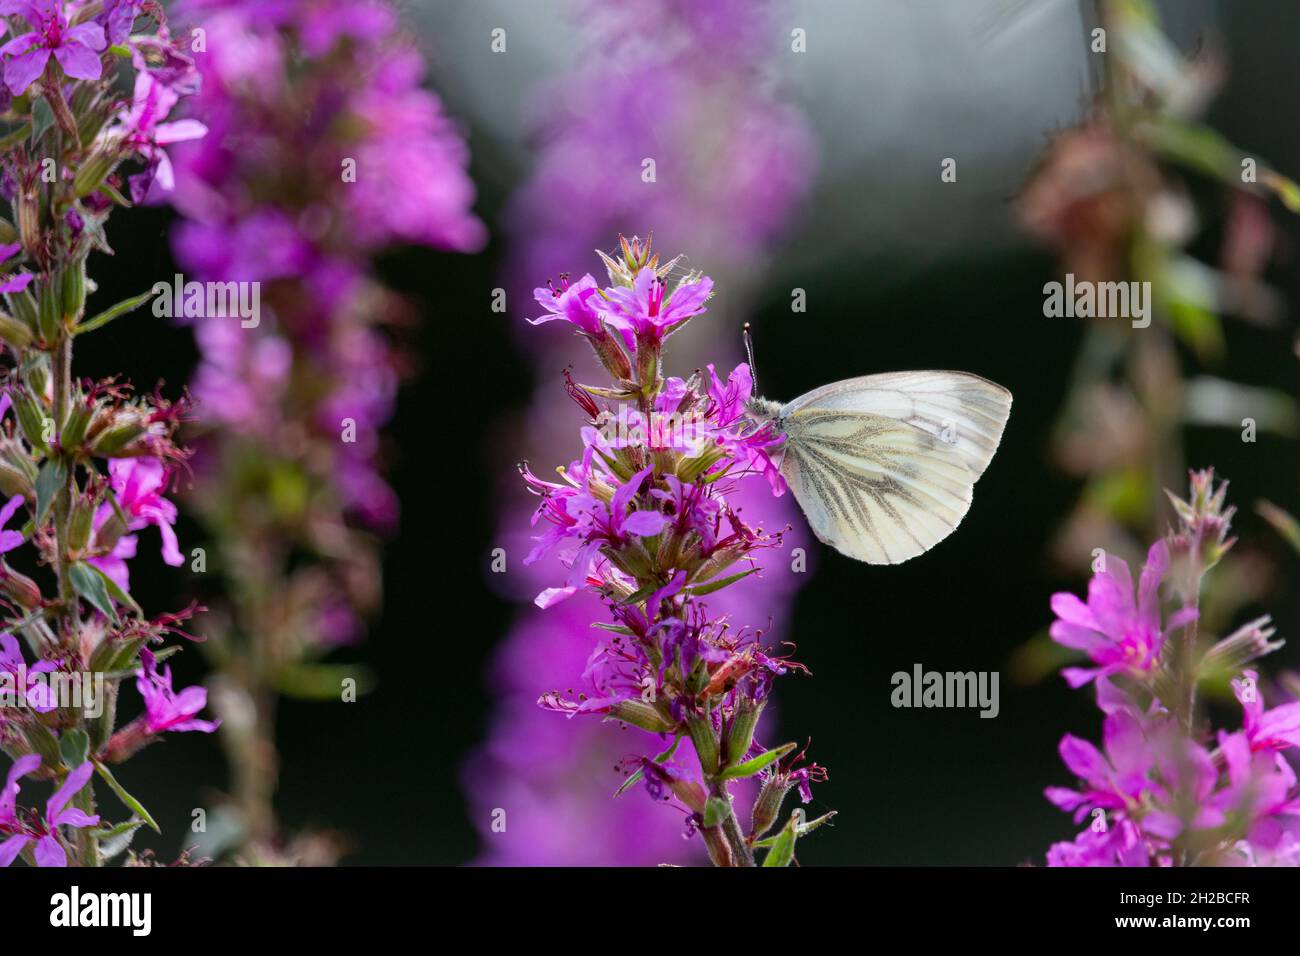 Der kohlweiße Schmetterling auf schönen violetten und rosa Blüten, um Nektar zu sammeln. Provinz Gelderland. Niederlande Stockfoto